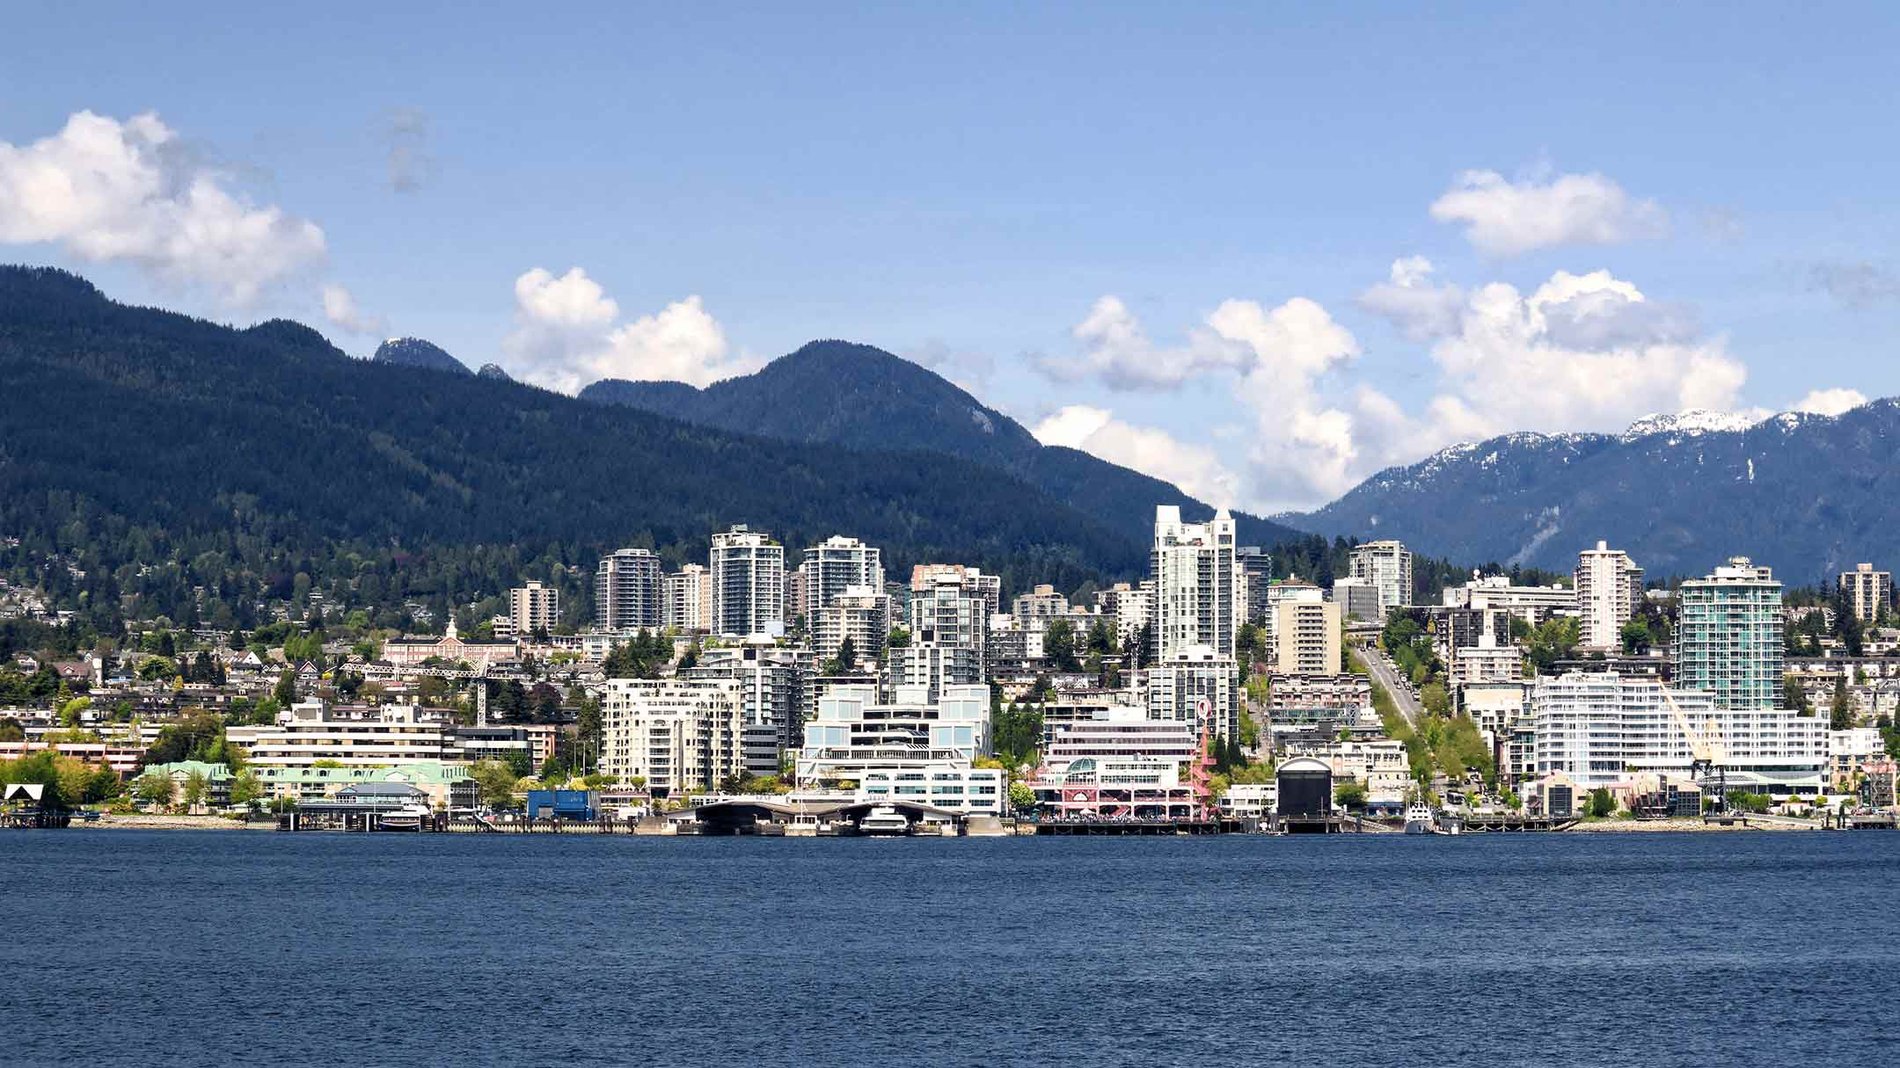 Les berges et la ligne d’horizon de North Vancouver, à Lonsdale Quay, avec ses gratte-ciel résidentiels et commerciaux